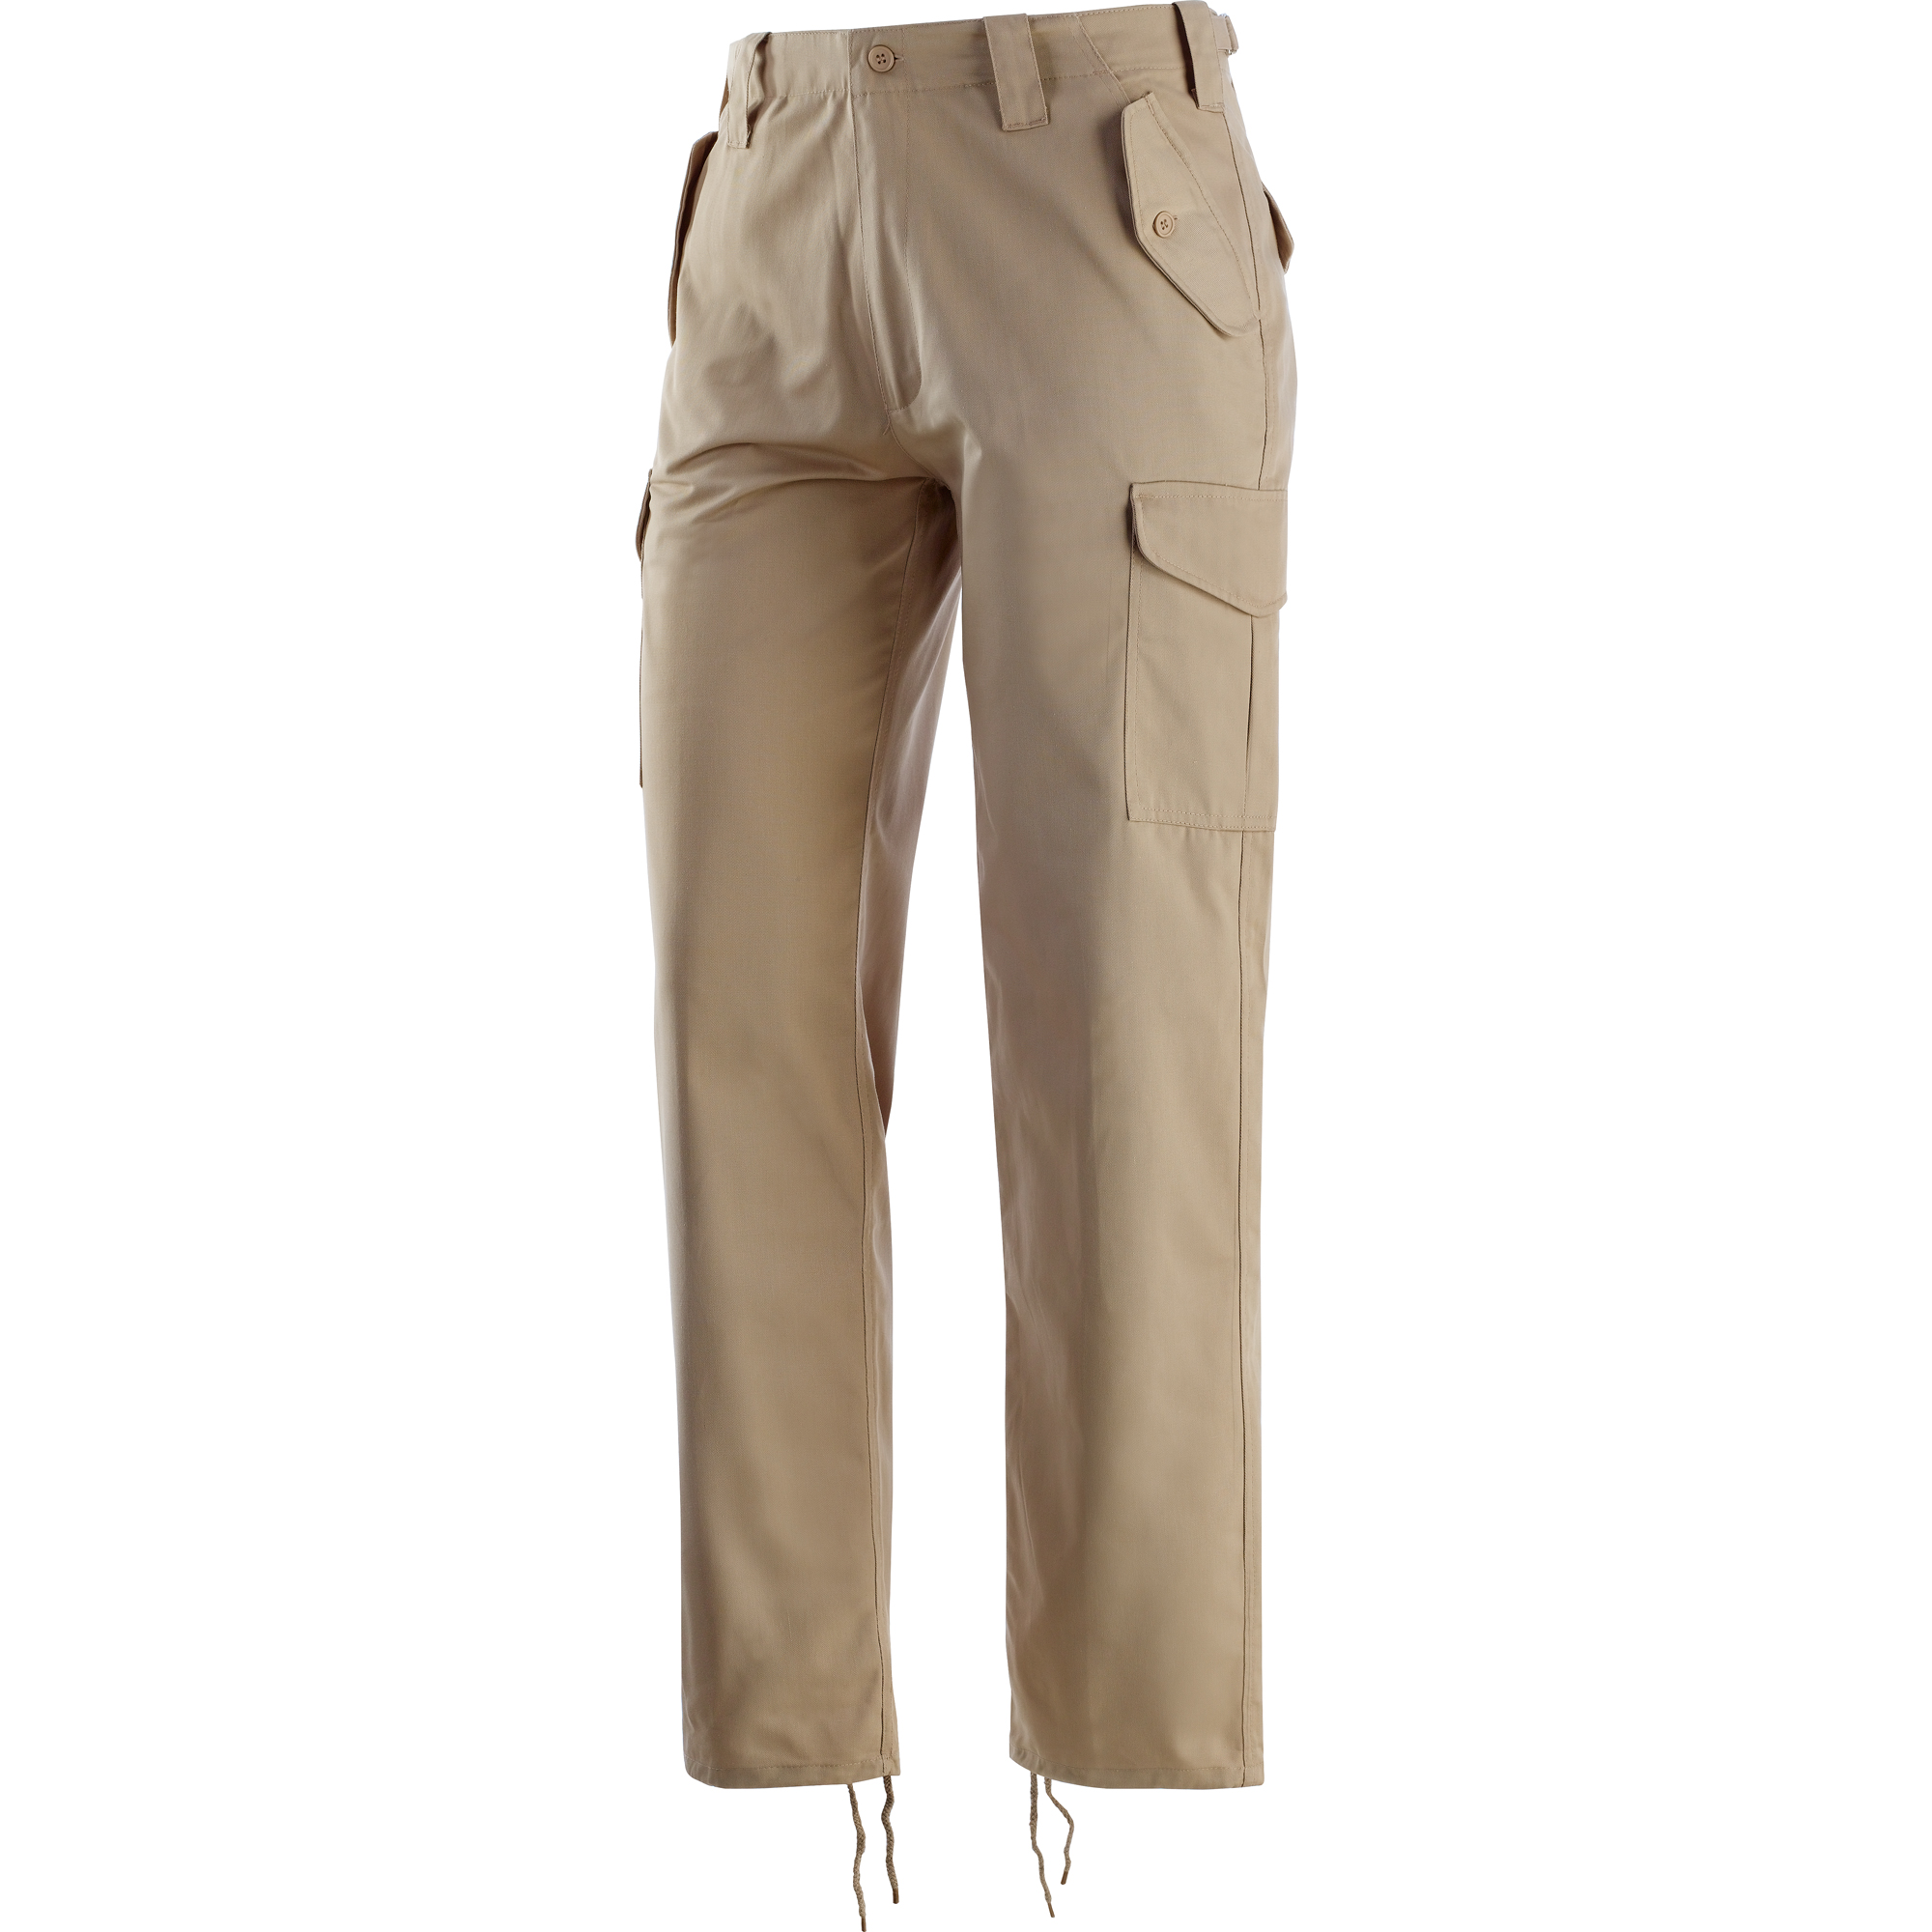 Pantaloni Neri Spa 437049 Army, la garanzia sul lavoro